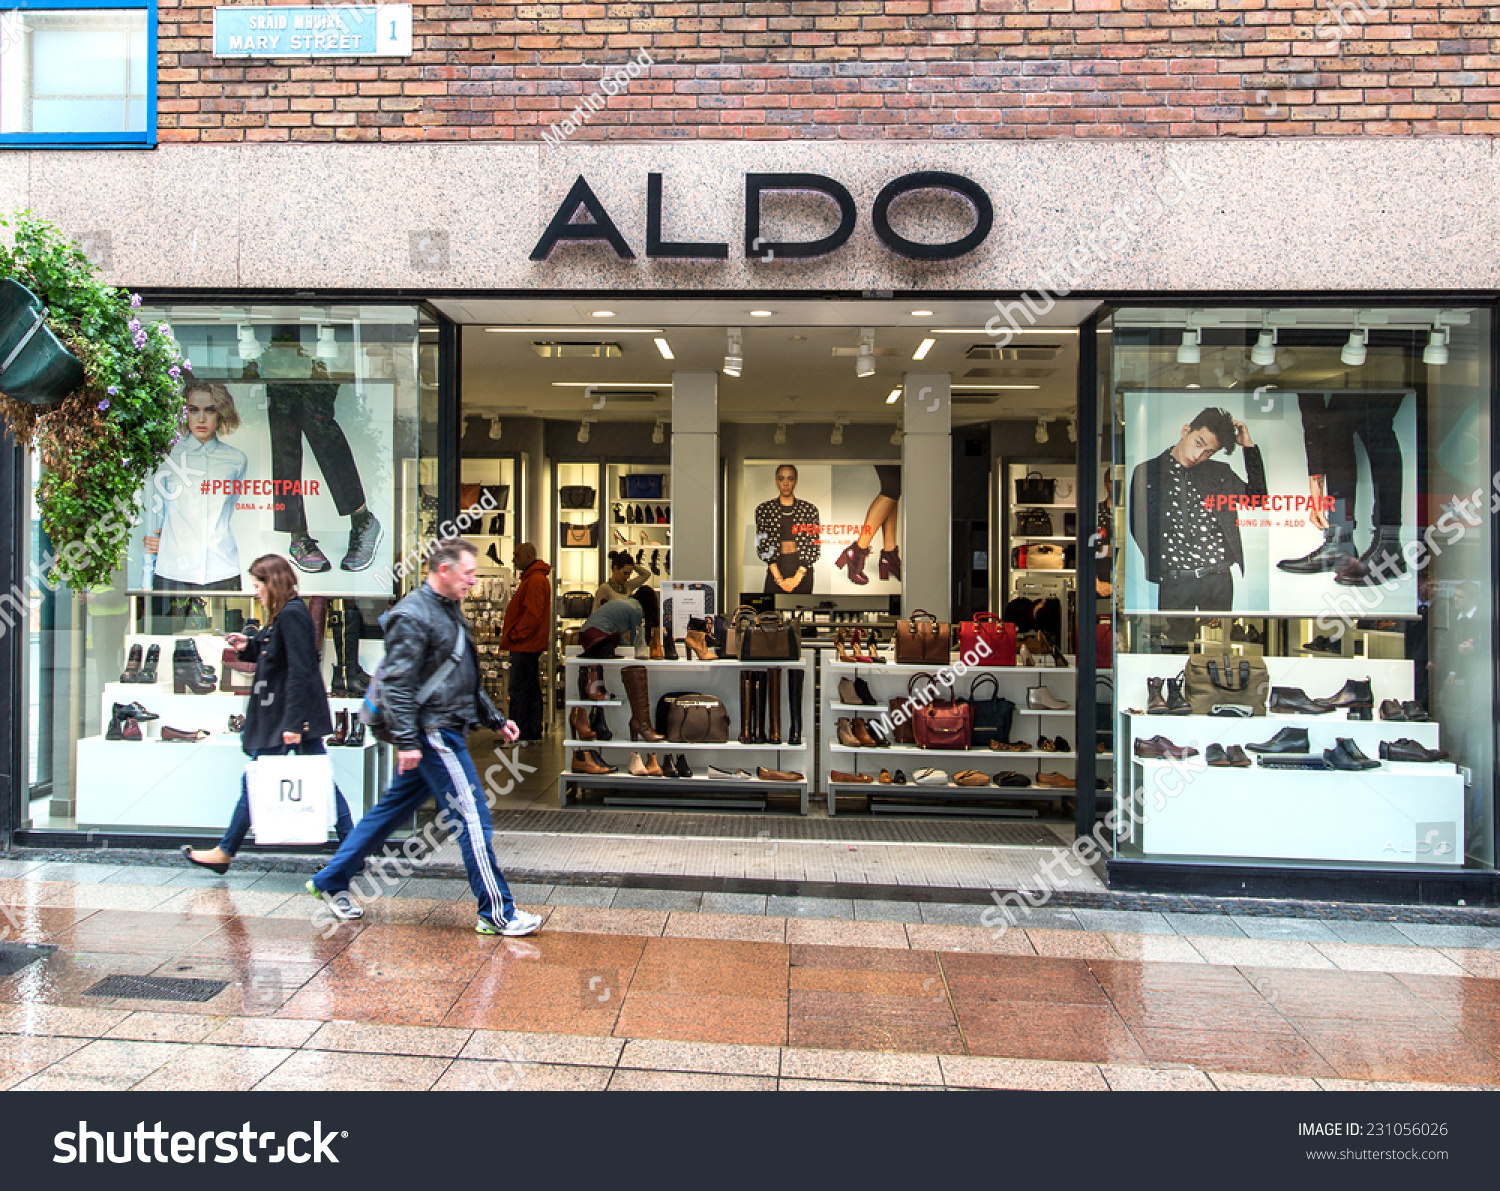 Dublin, Ireland - October 3, 2014: A Branch Of Aldo. The Aldo Group Is ...